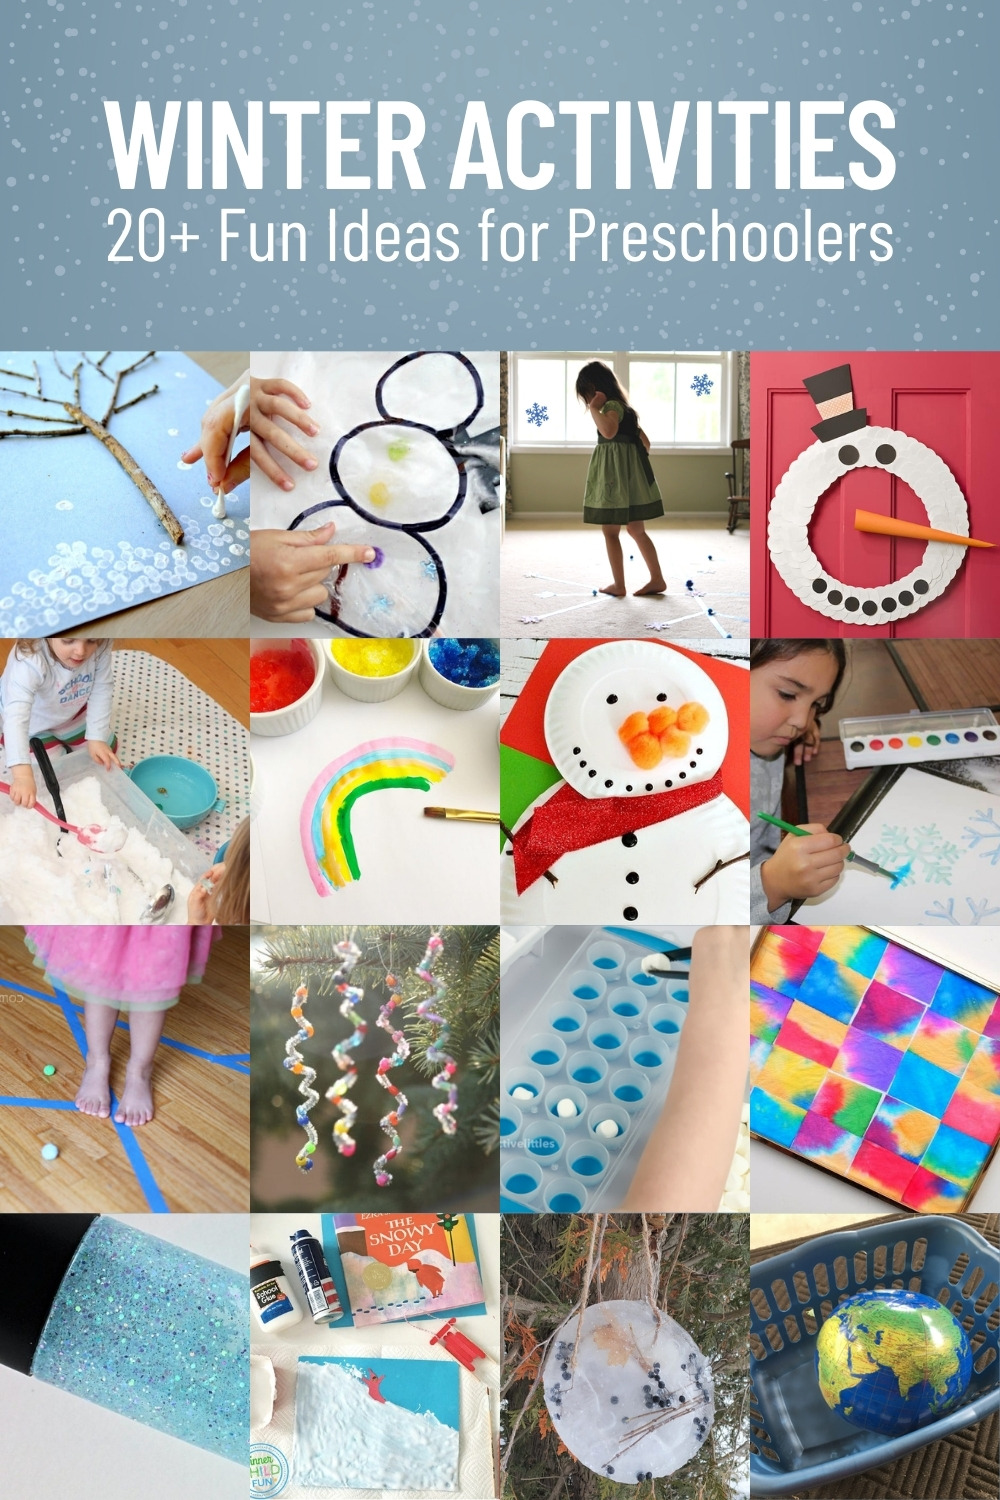 Over 20 Winter Activities for Preschoolers